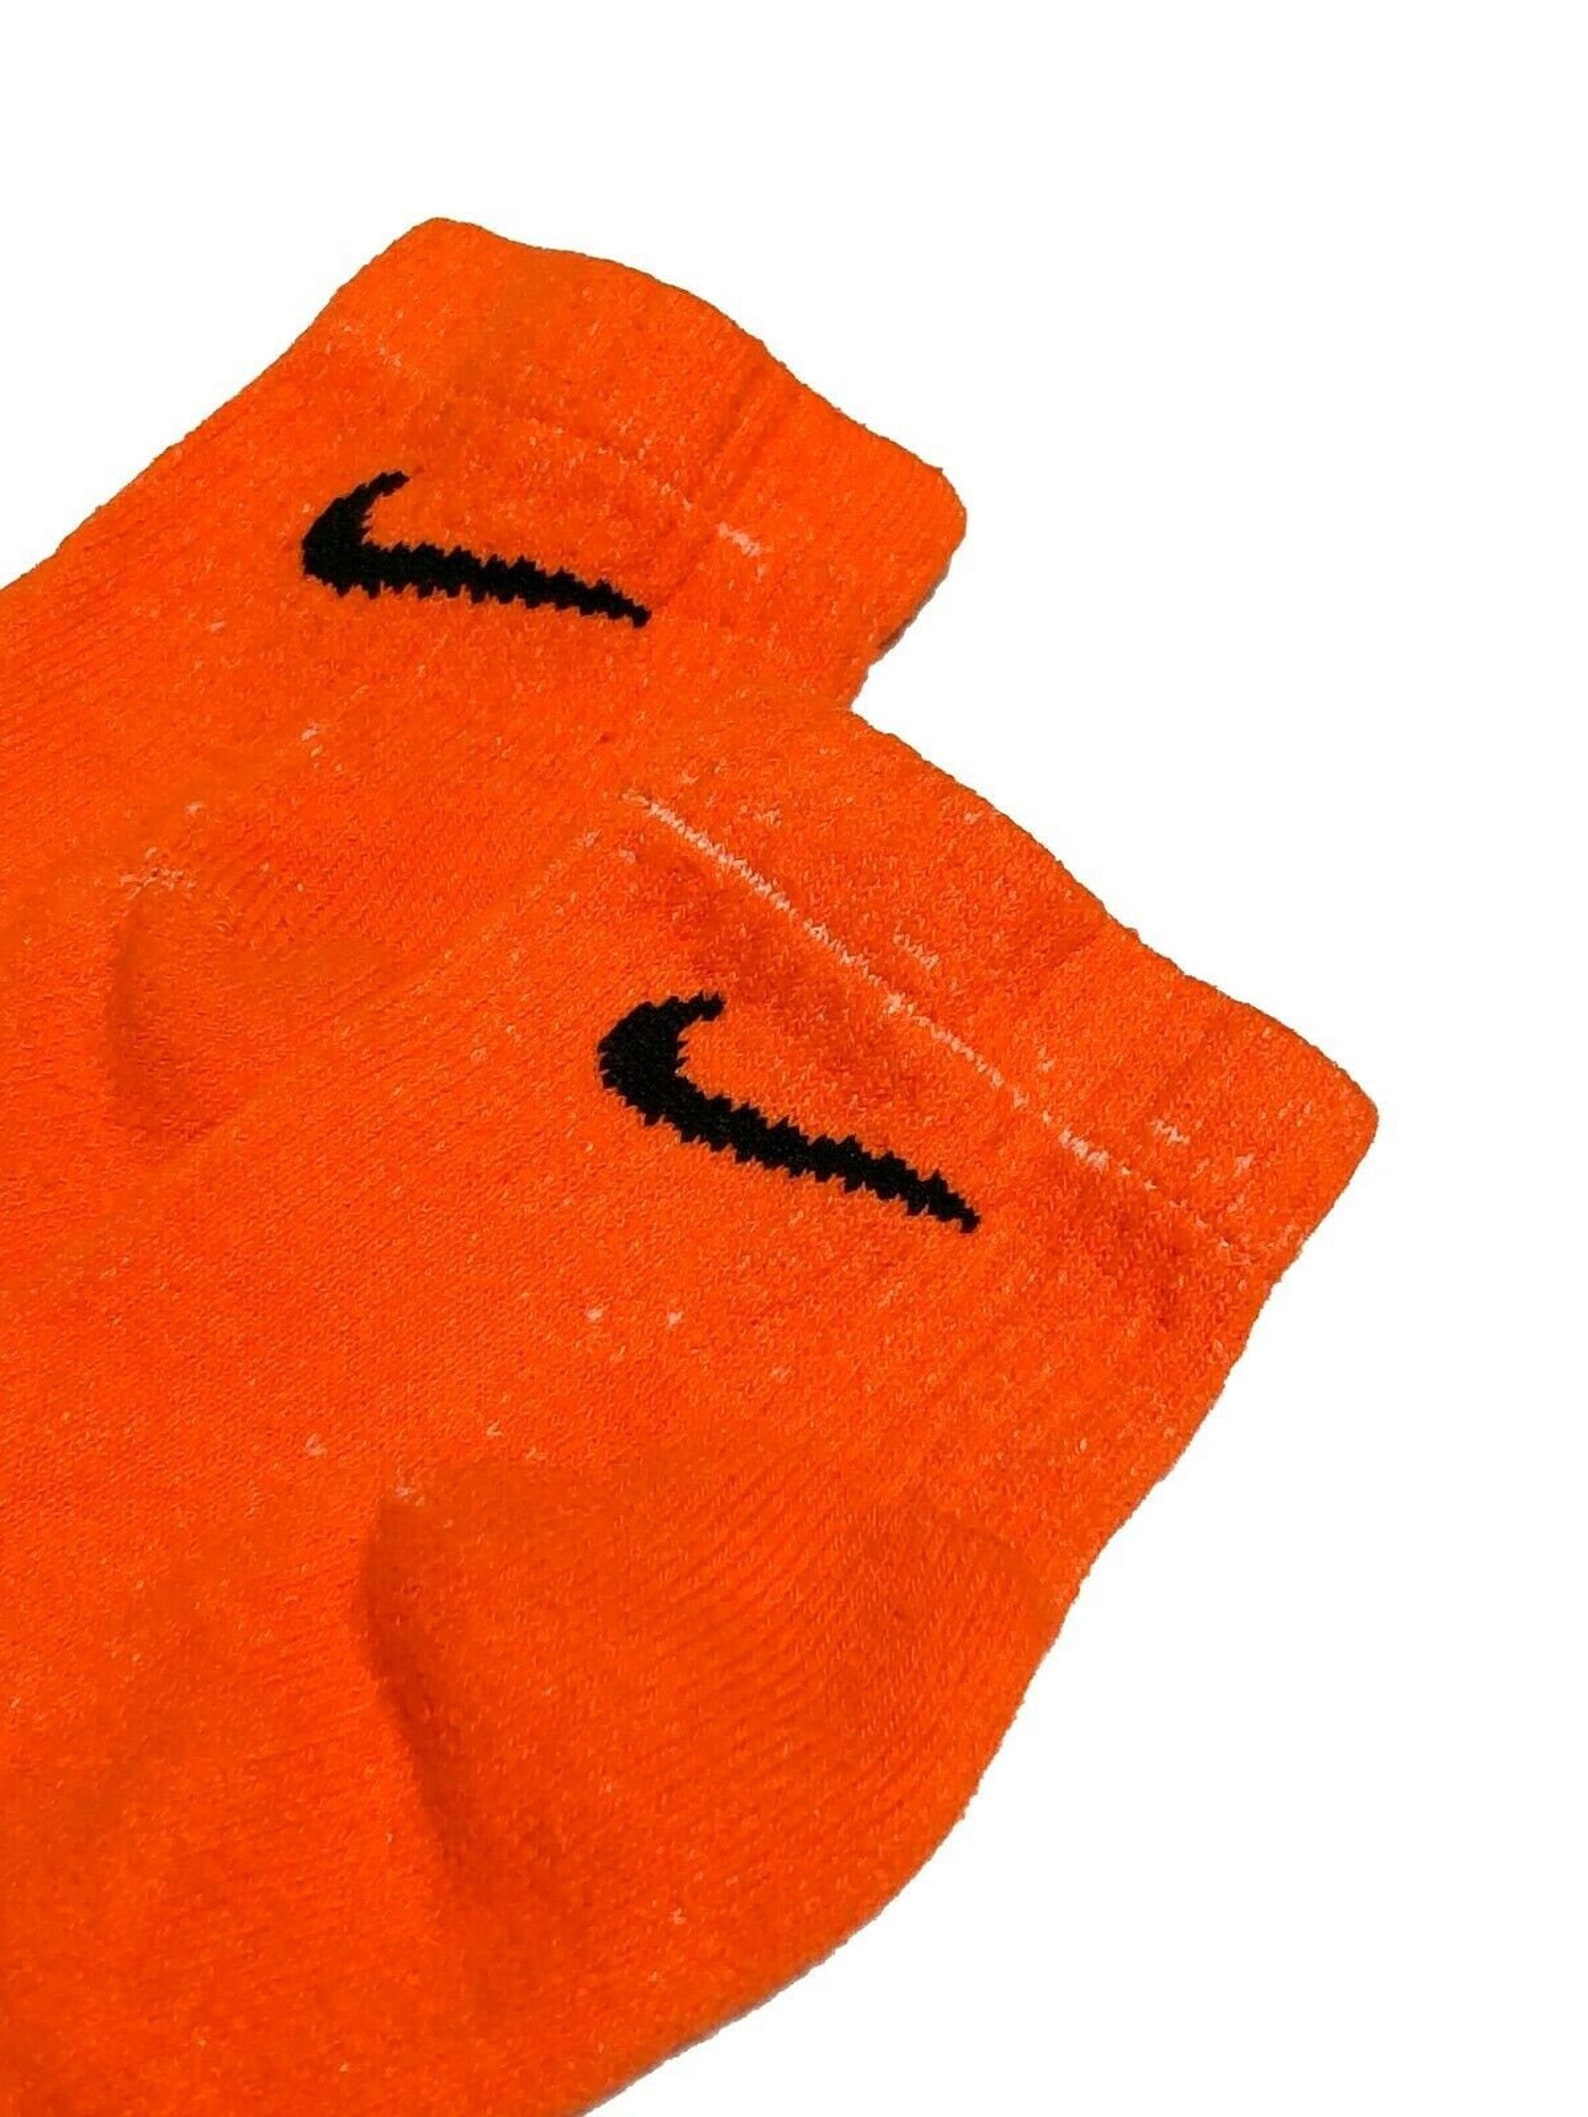 NIKE ORANGE ANKLE Official Nike Dyed Socks Hand Crew Socks - Etsy